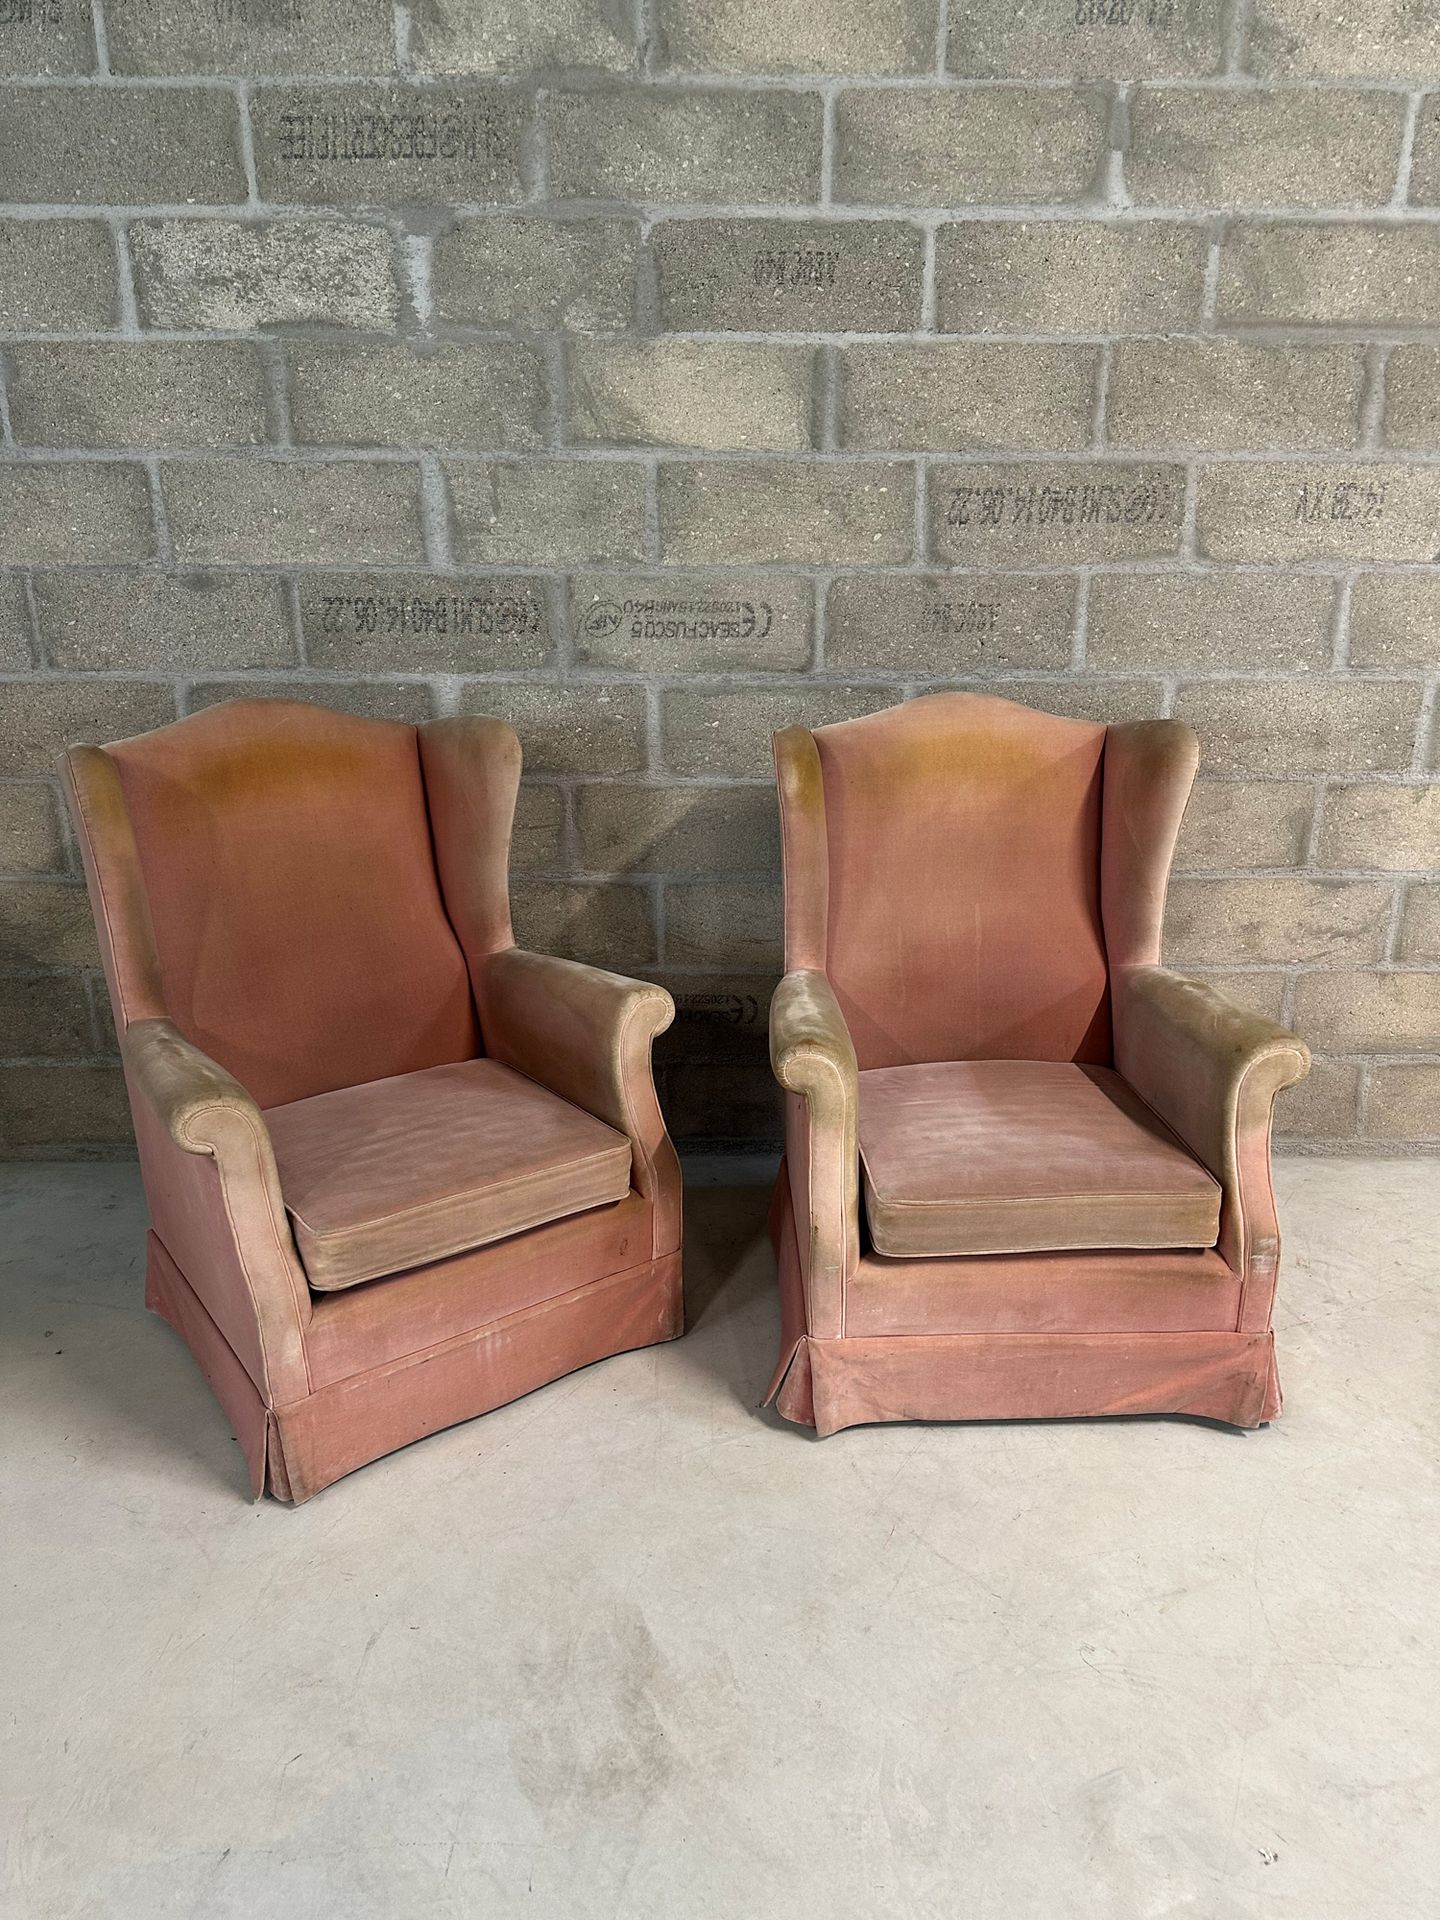 Travail Danois 一对翼椅
涡卷扶手
木制椅腿
粉红色天鹅绒软垫（待重做）
H.102 厘米 - 81 厘米 - 66 厘米